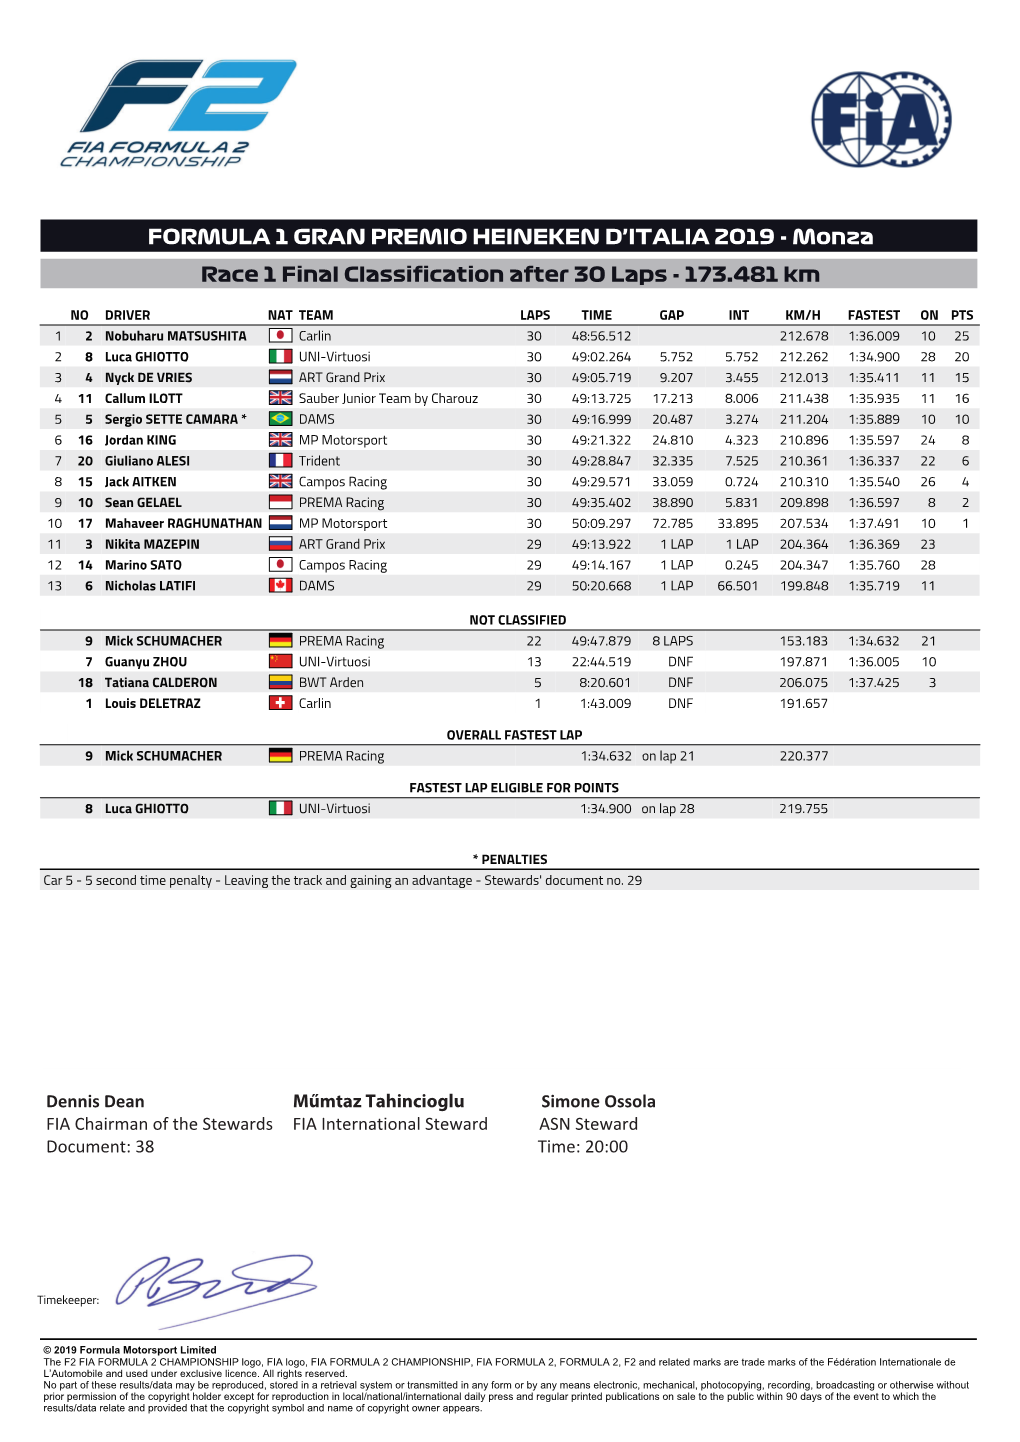 Monza Race 1 Final Classification After 30 Laps - 173.481 Km